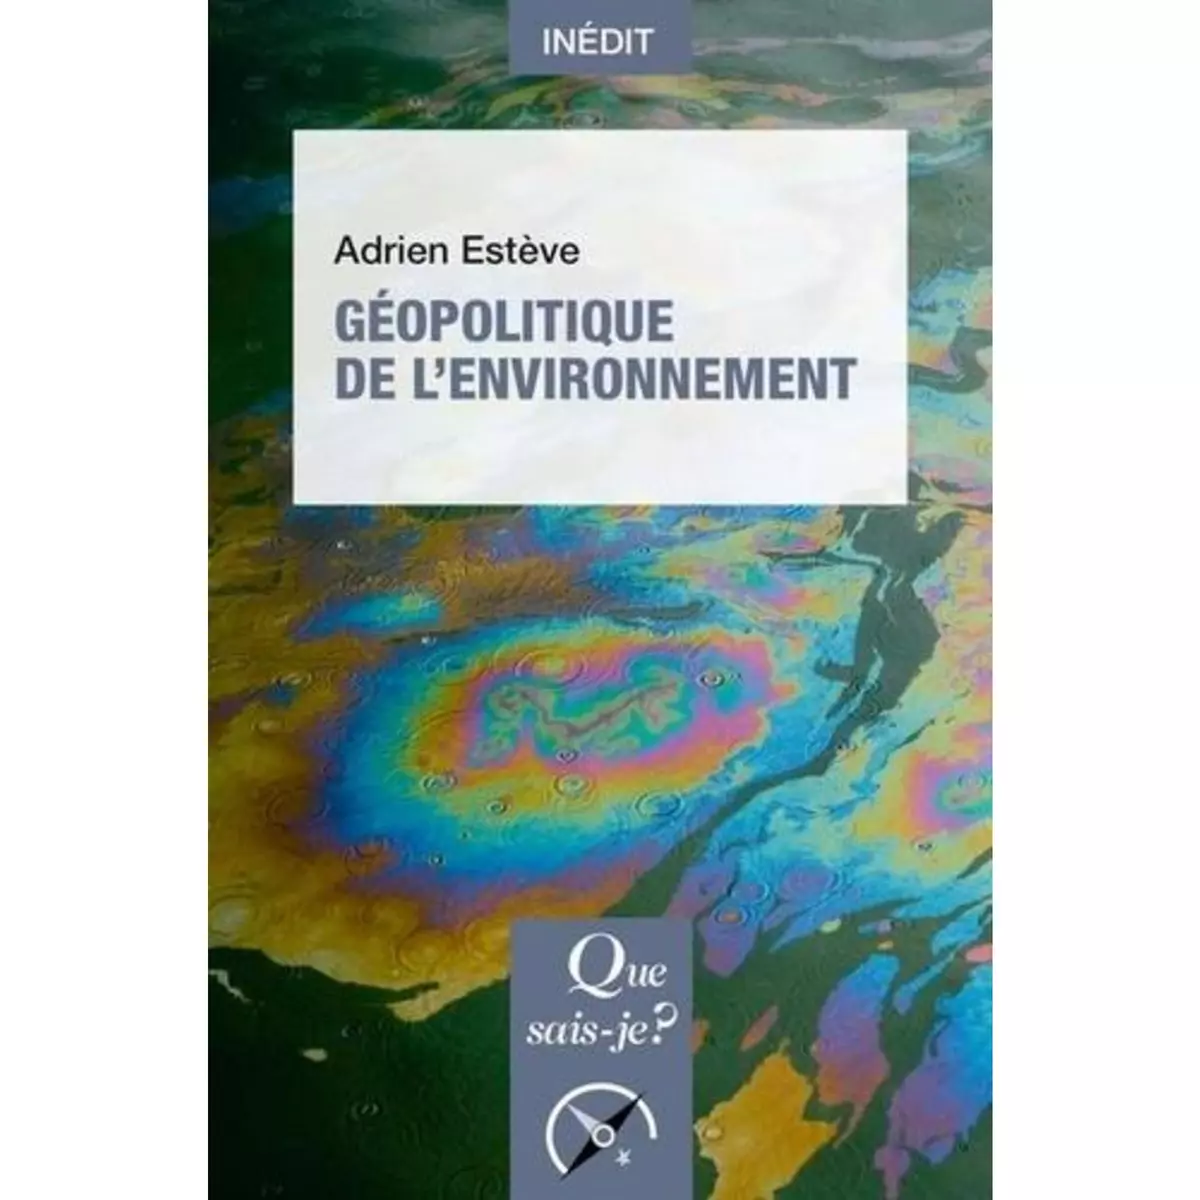  GEOPOLITIQUE DE L'ENVIRONNEMENT, Estève Adrien